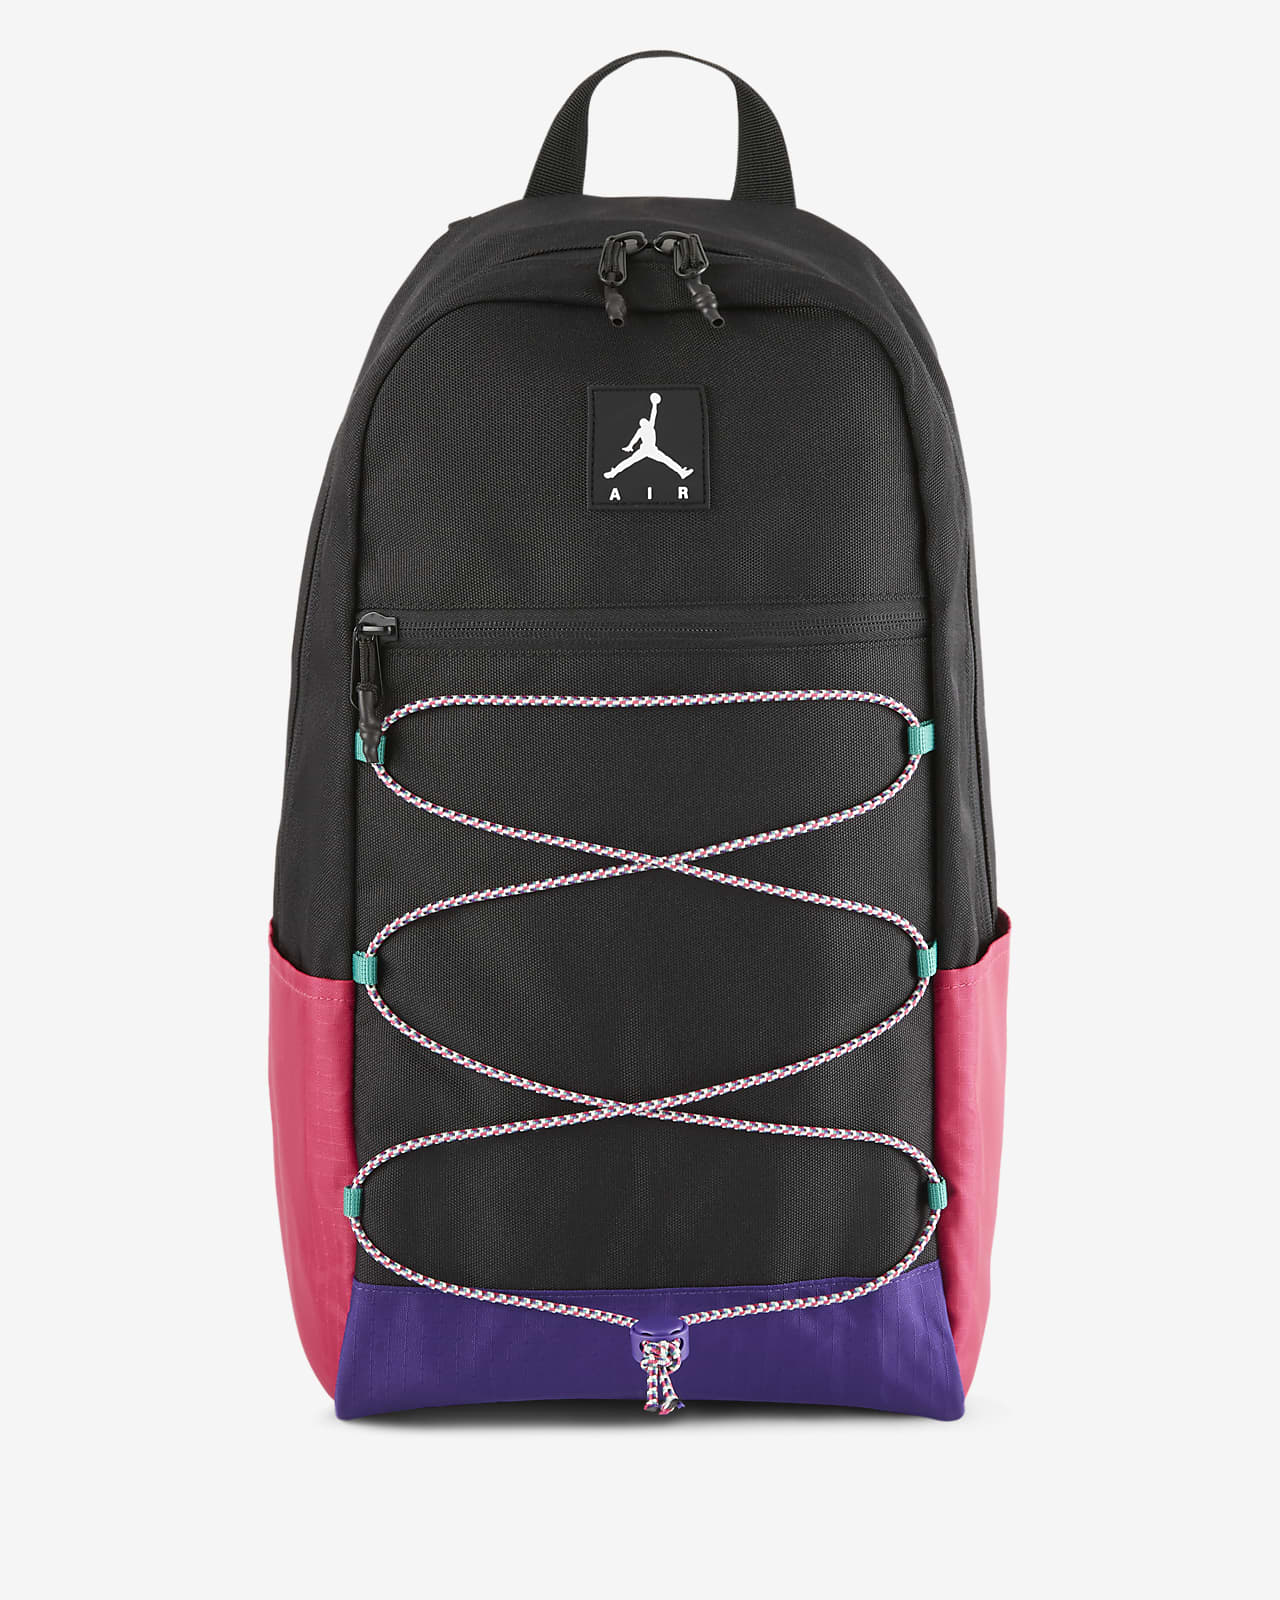 jordan backpack